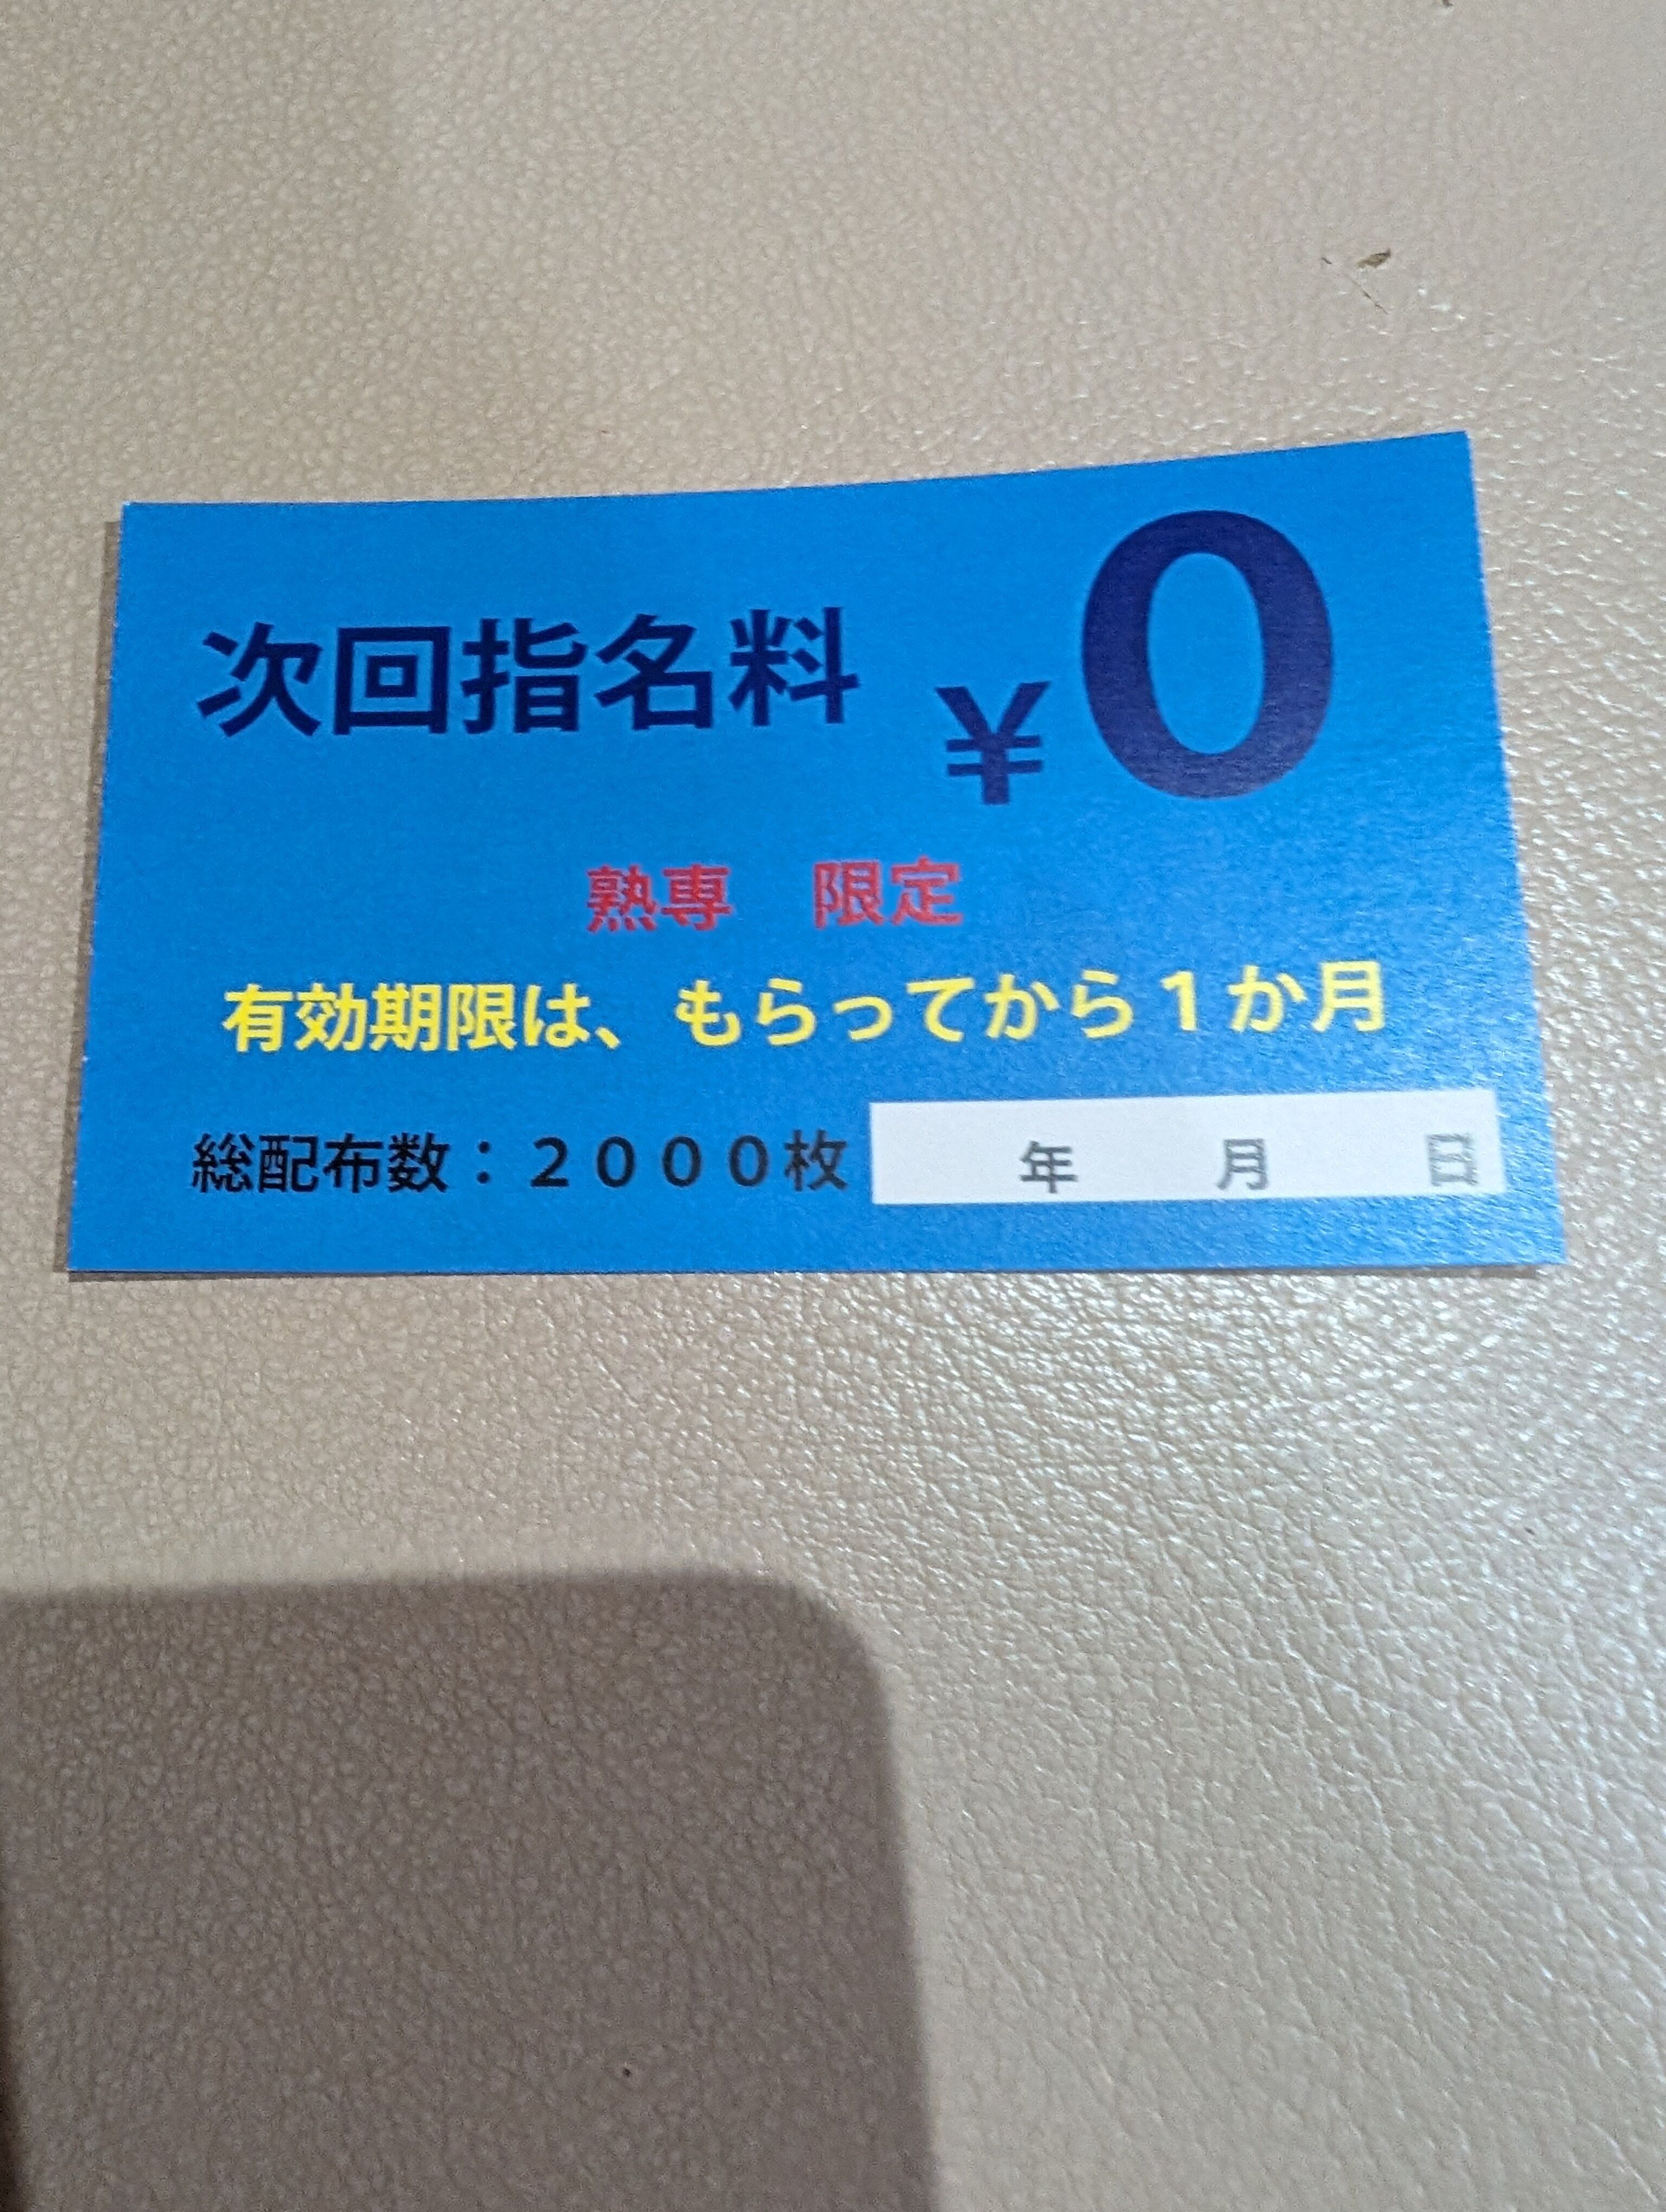 次回指名料0円券